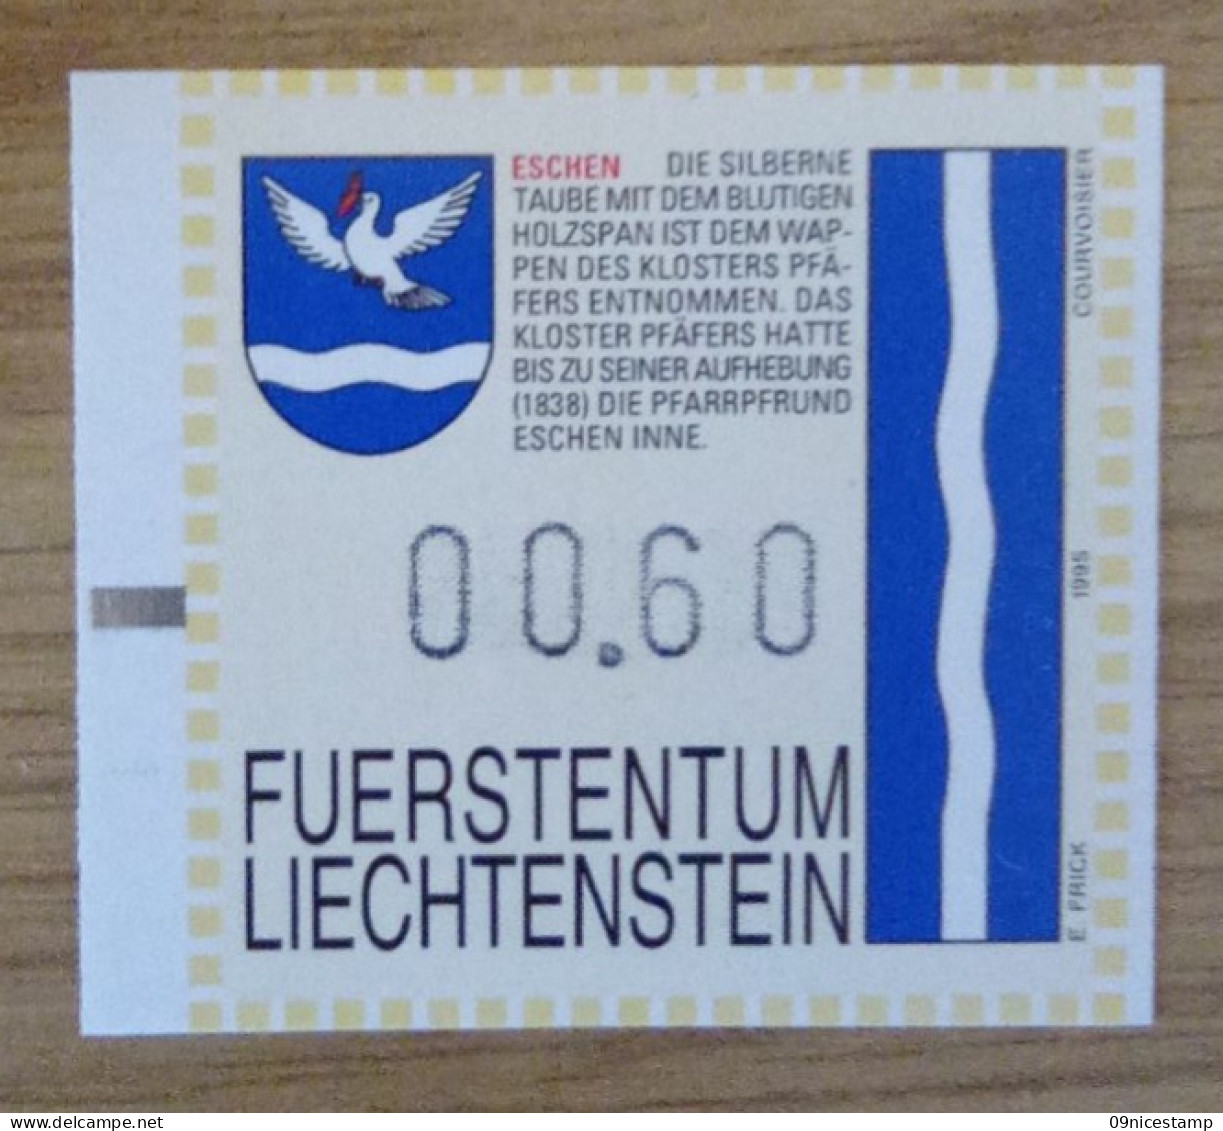 Liechtenstein, Slotmachine - Machine Labels [ATM]